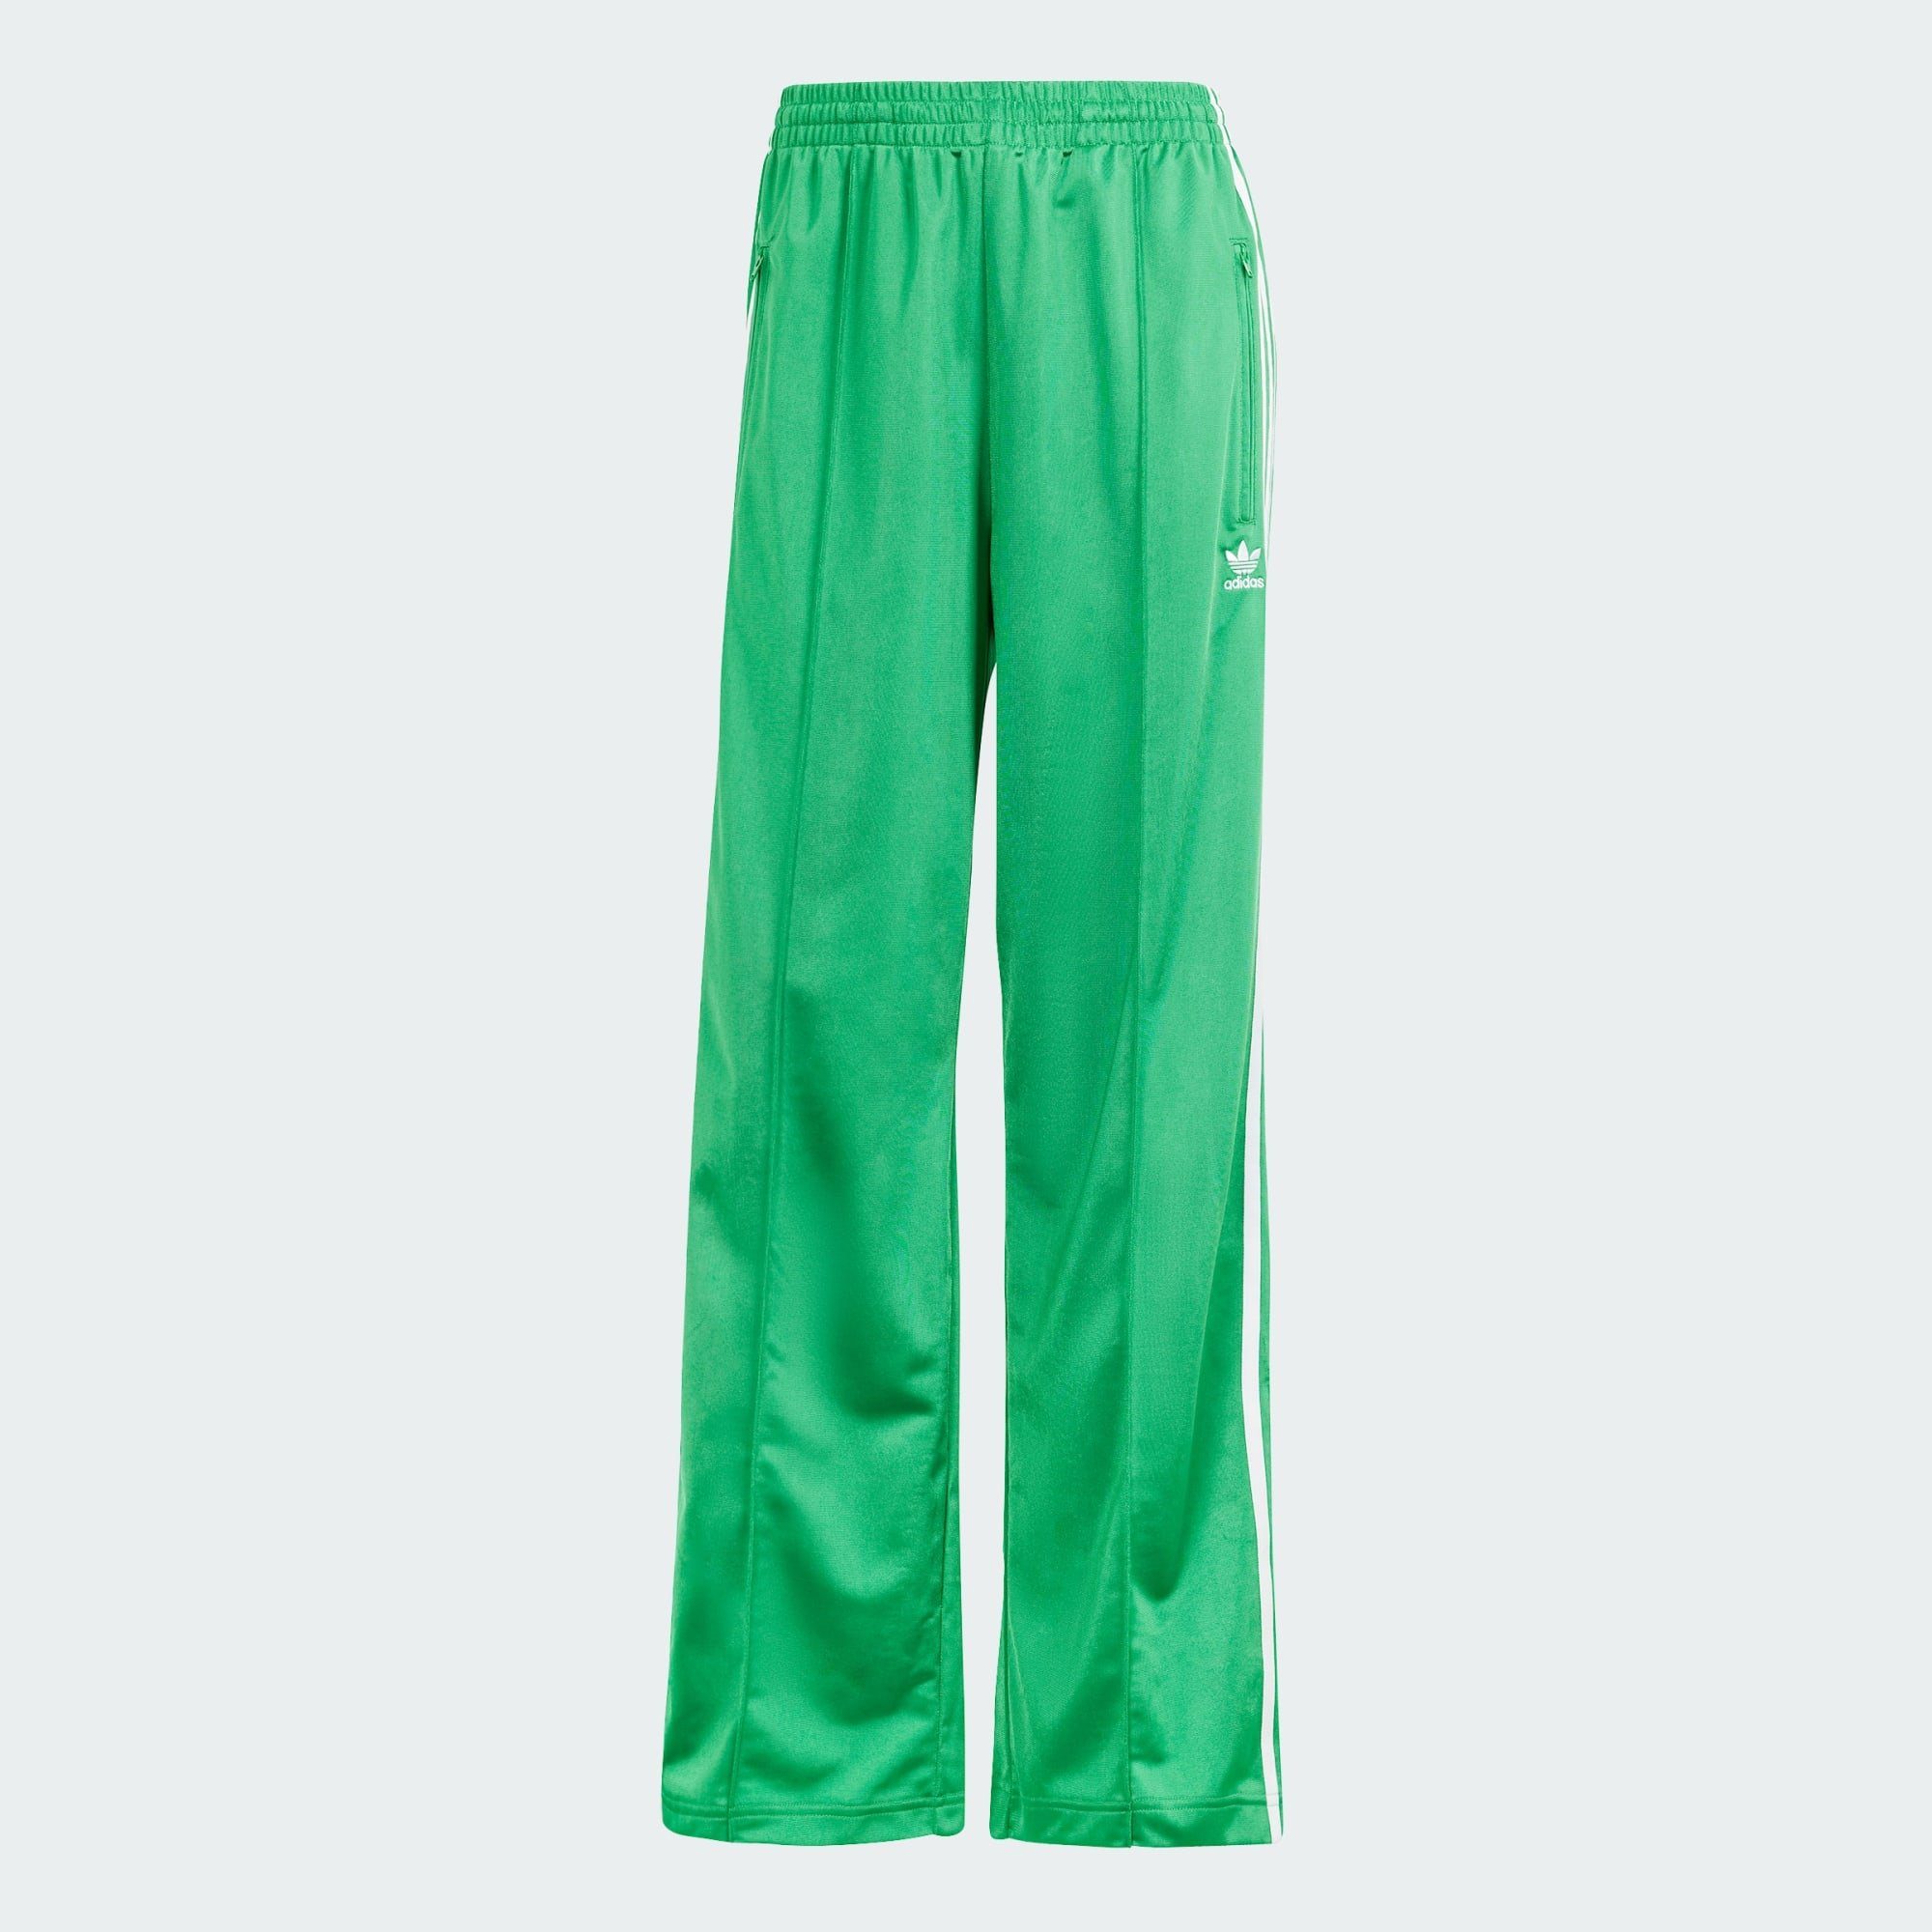 TRAININGSHOSE LOOSE adidas FIREBIRD Originals Jogginghose Green